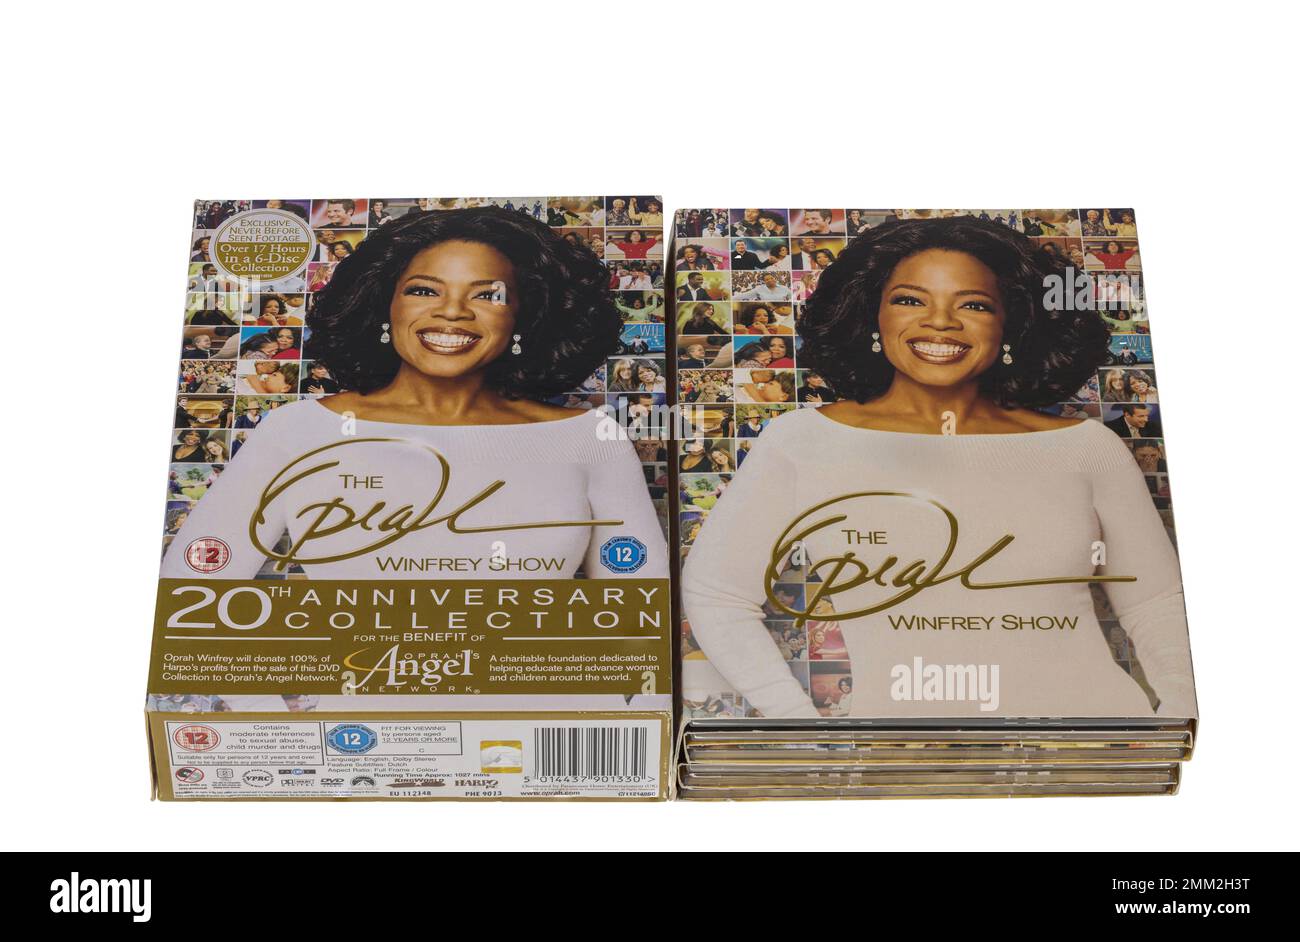 Vue rapprochée de la collection de coffrets DVD anniversaire 20th du spectacle Oprah Winfrey. Suède. Banque D'Images